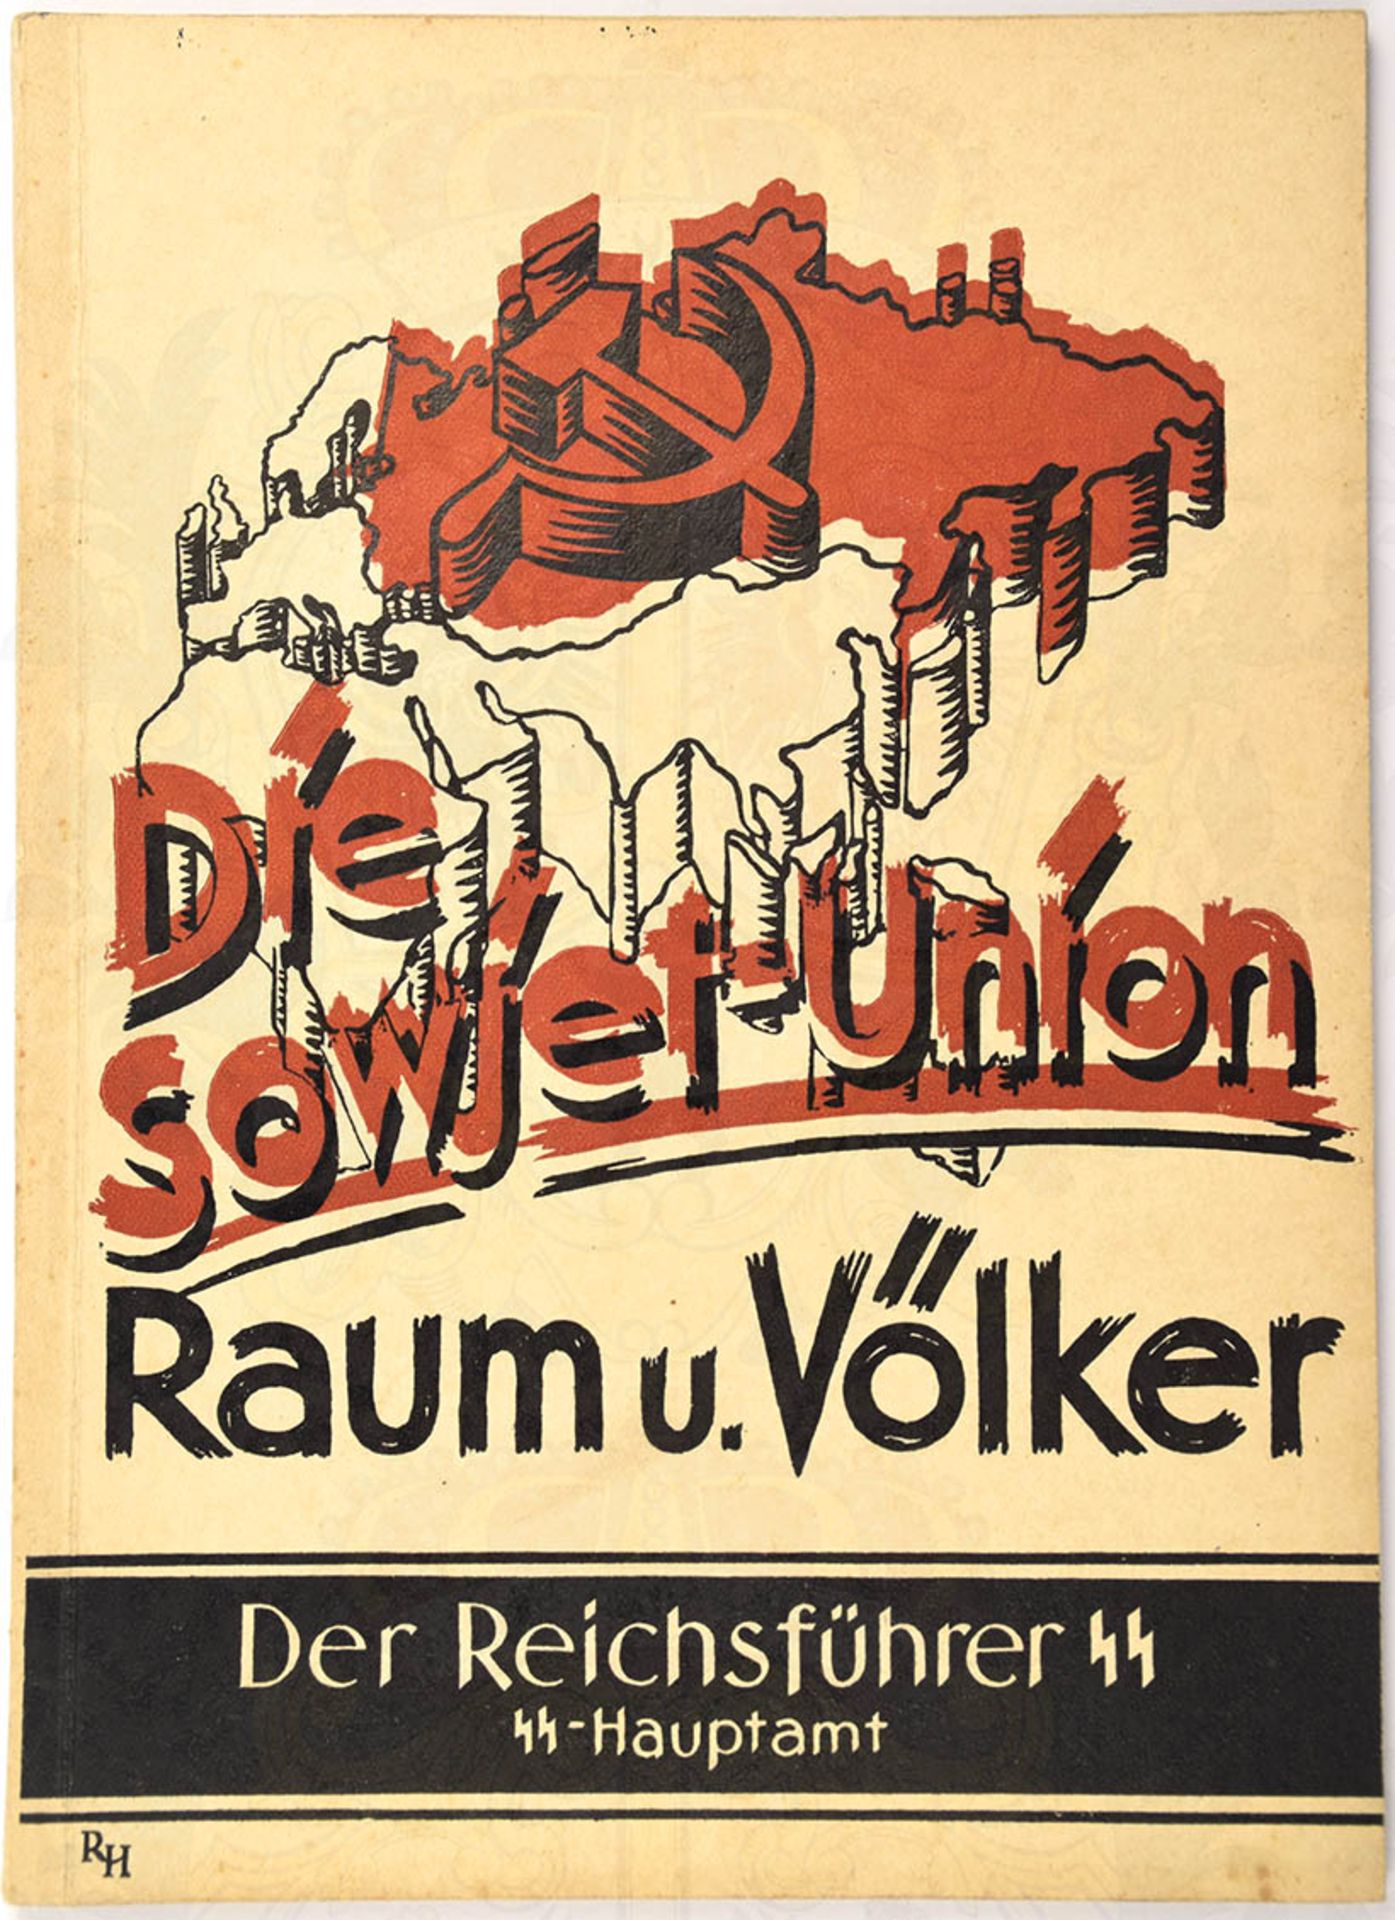 DIE SOWJETUNION, RAUM UND VÖLKER, Schulungsheft v. SS-Hauptamt IV, um 1942, "Nur für Führer!",